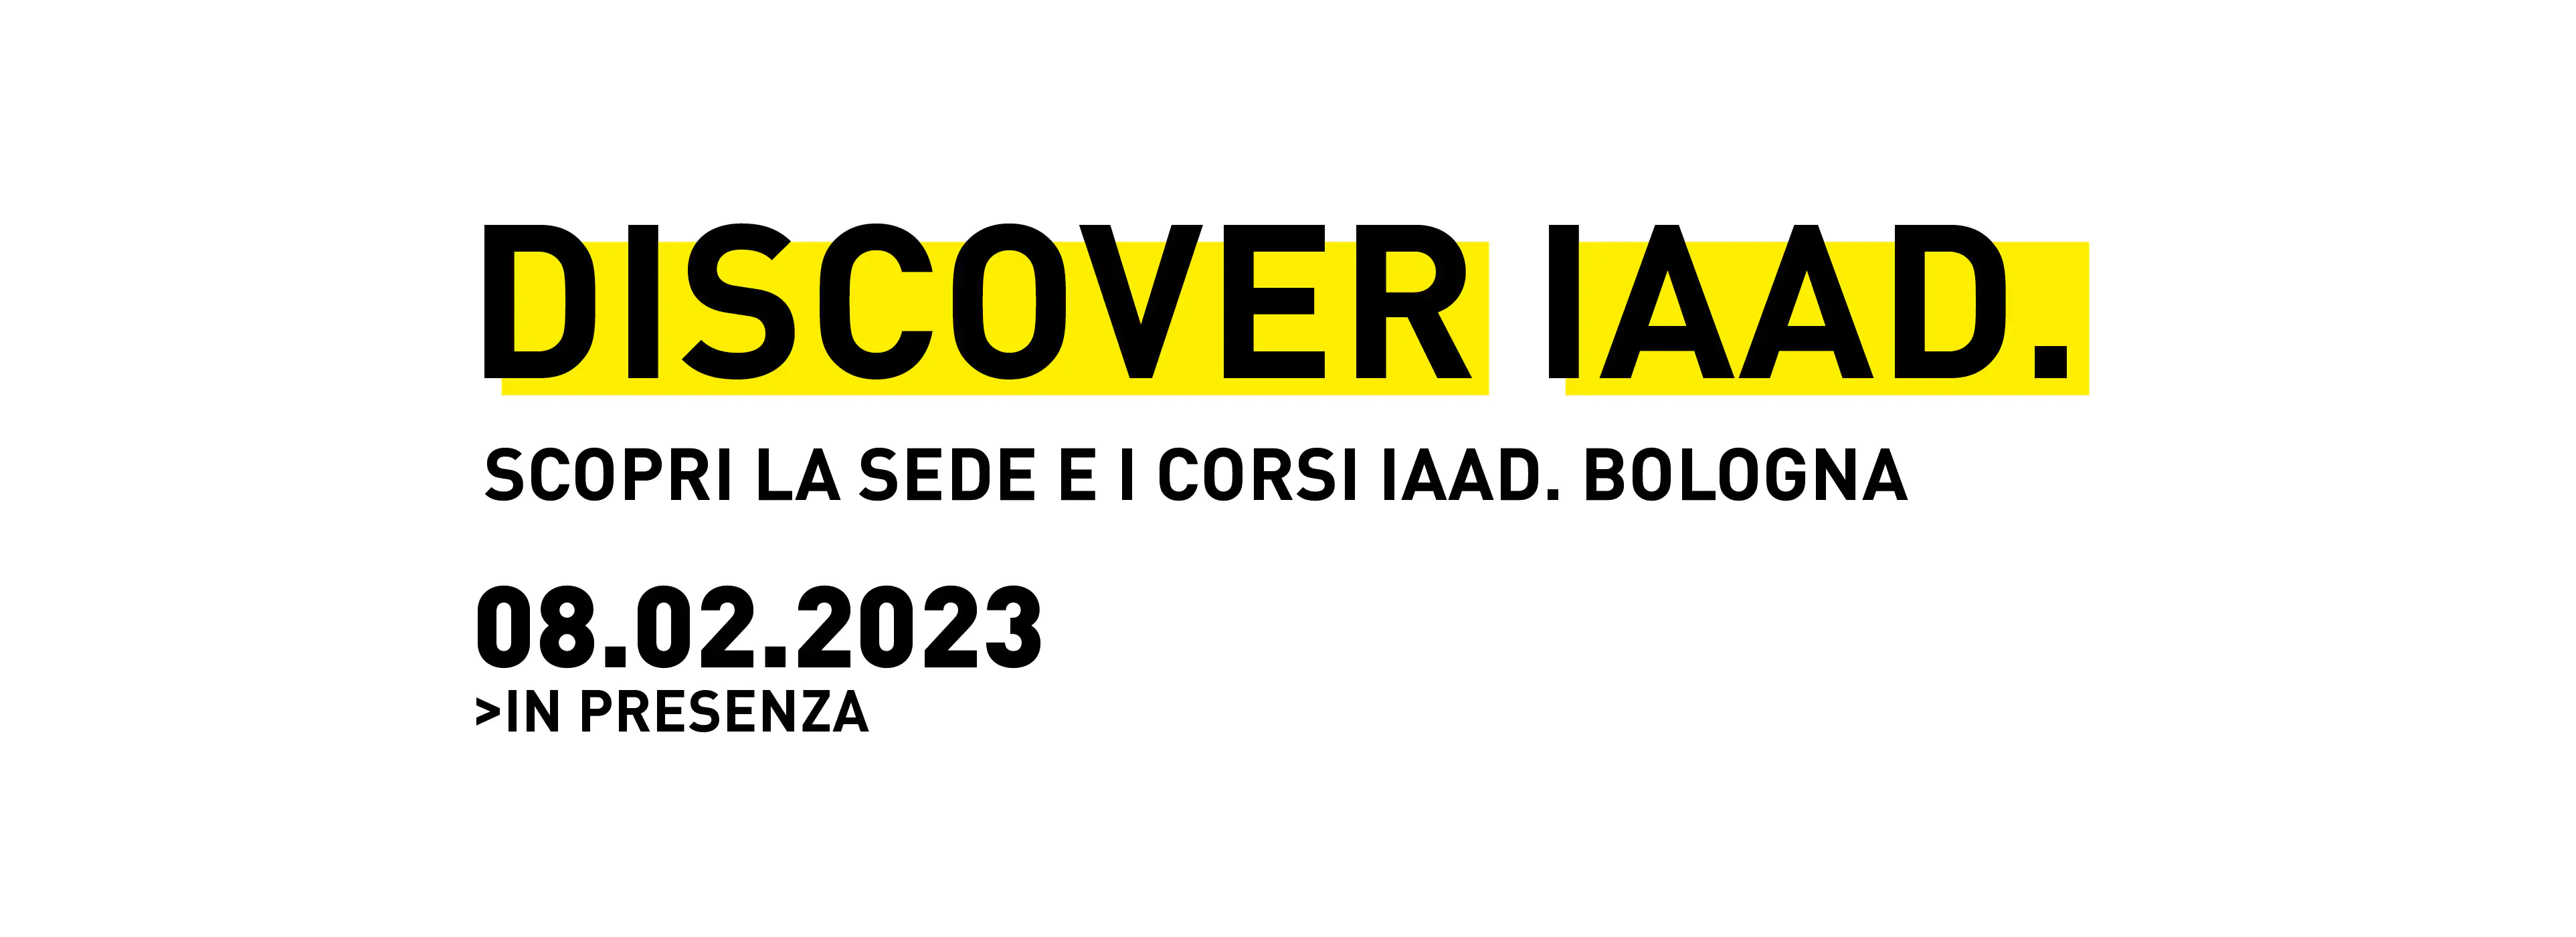 Scopri la sede i corsi triennali in design di IAAD. Bologna durante gli eventi Discover IAAD.